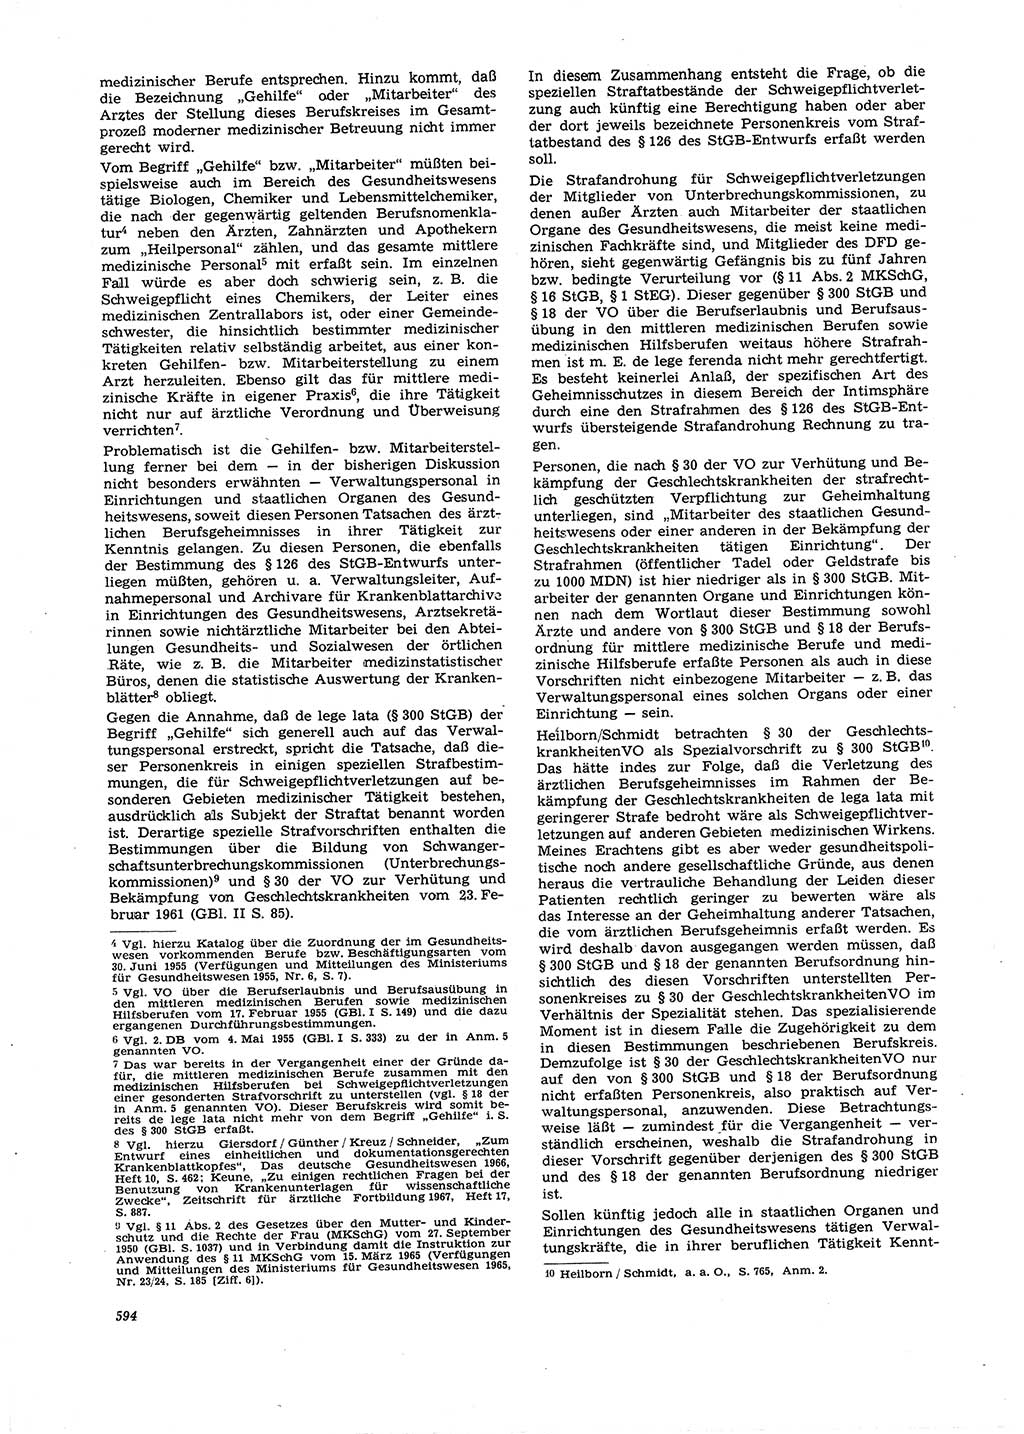 Neue Justiz (NJ), Zeitschrift für Recht und Rechtswissenschaft [Deutsche Demokratische Republik (DDR)], 21. Jahrgang 1967, Seite 594 (NJ DDR 1967, S. 594)